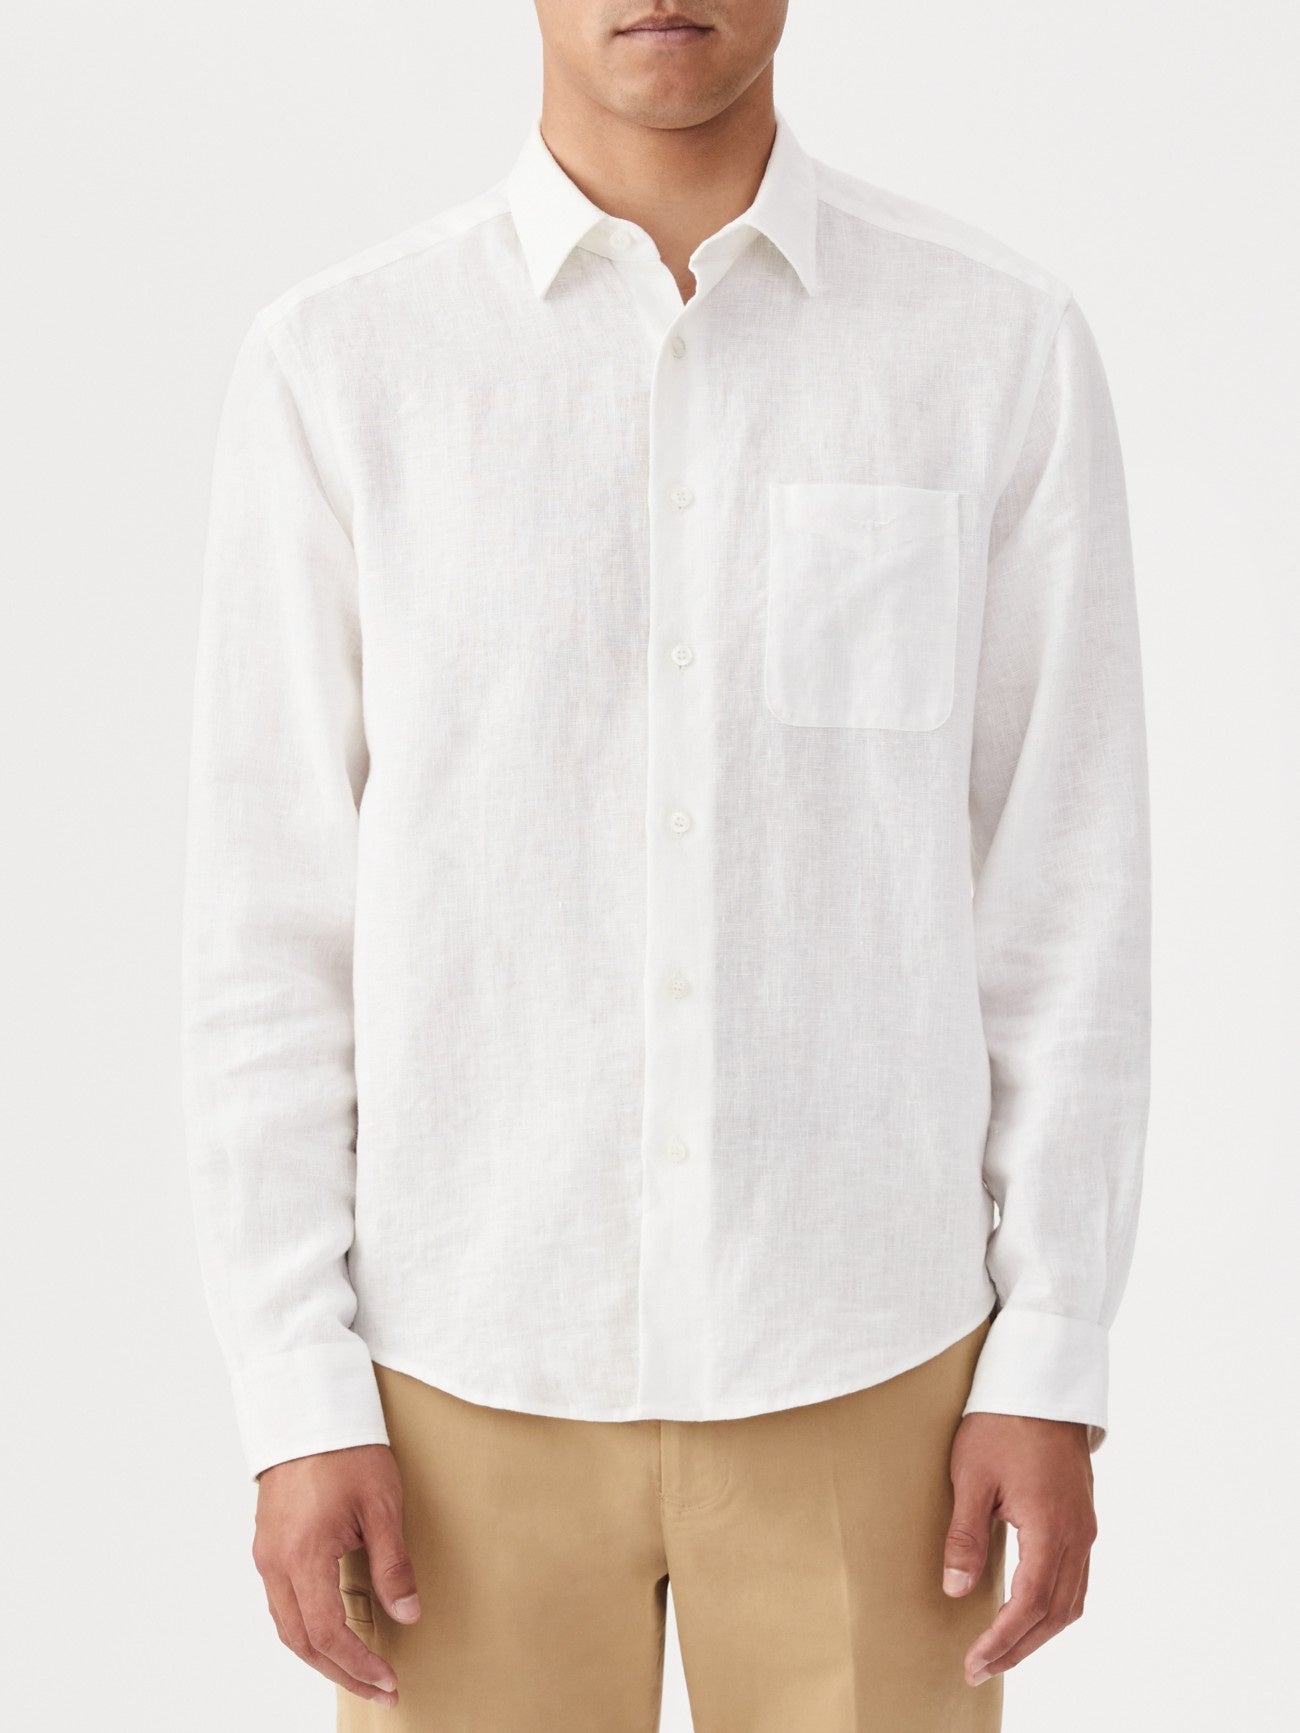 RM Williams S24 Coalcliff Linen Shirt